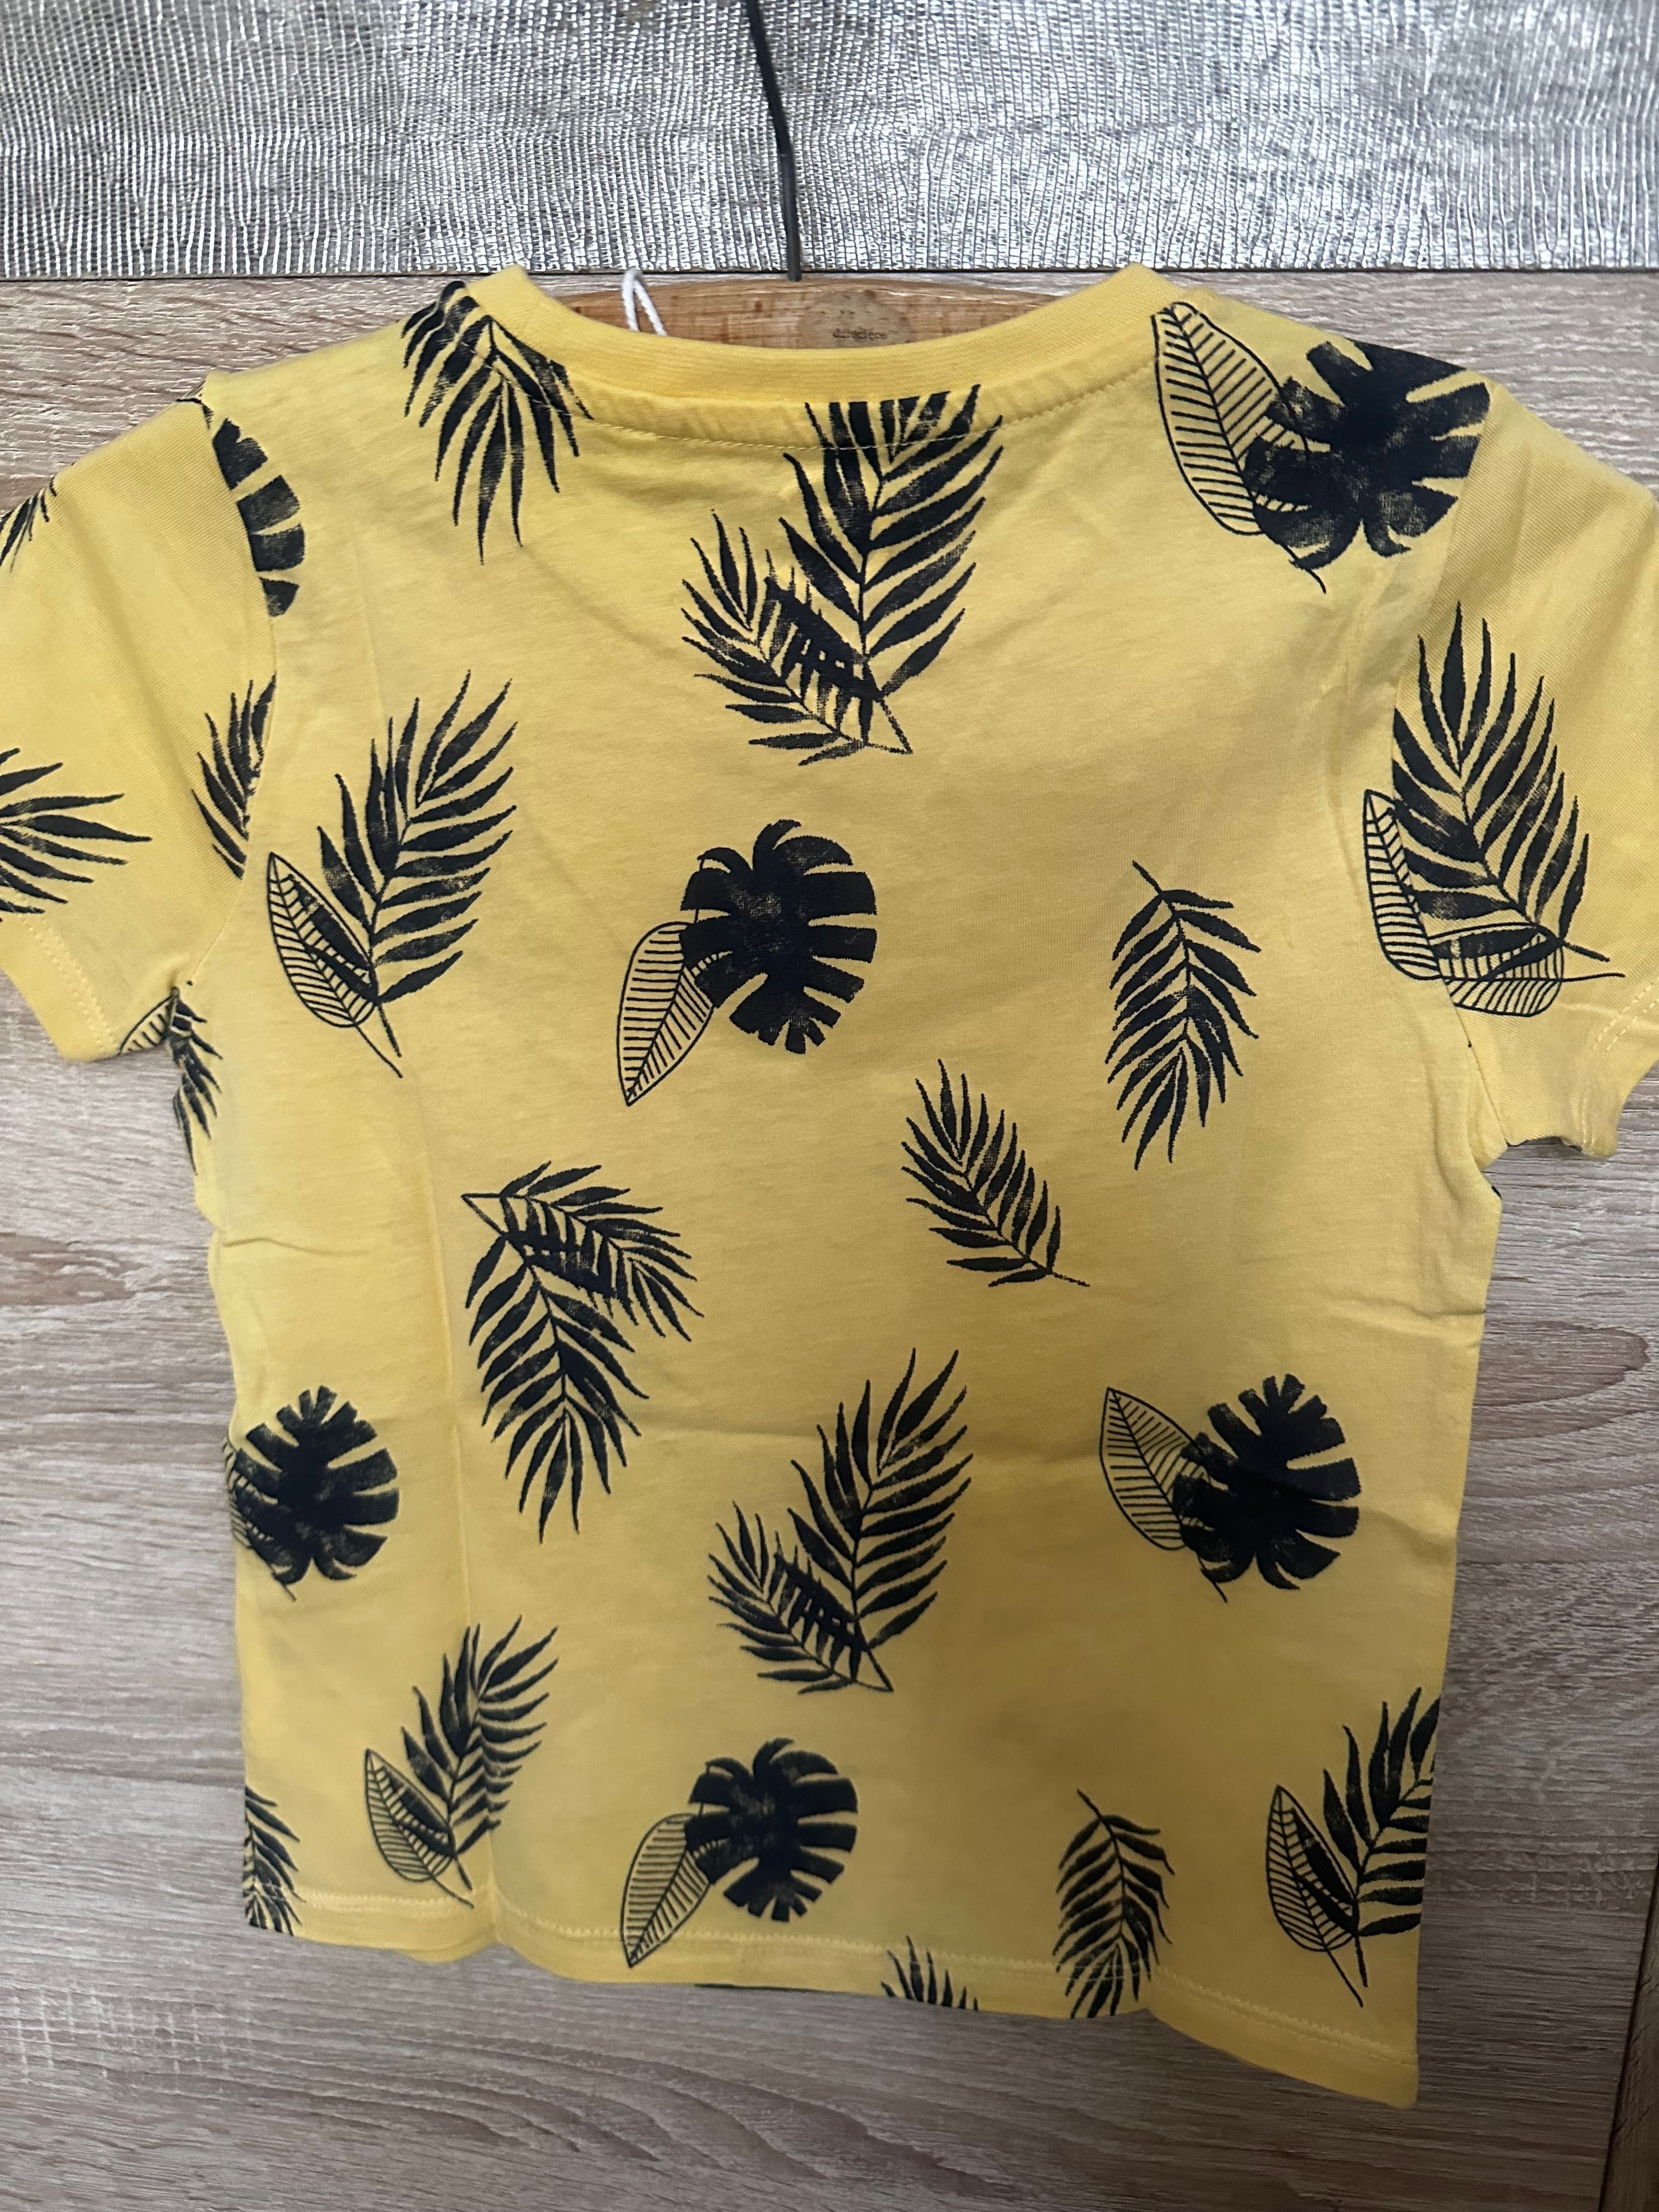 T-shirt chłopięcy żółty w czarne liście rozmiar 110